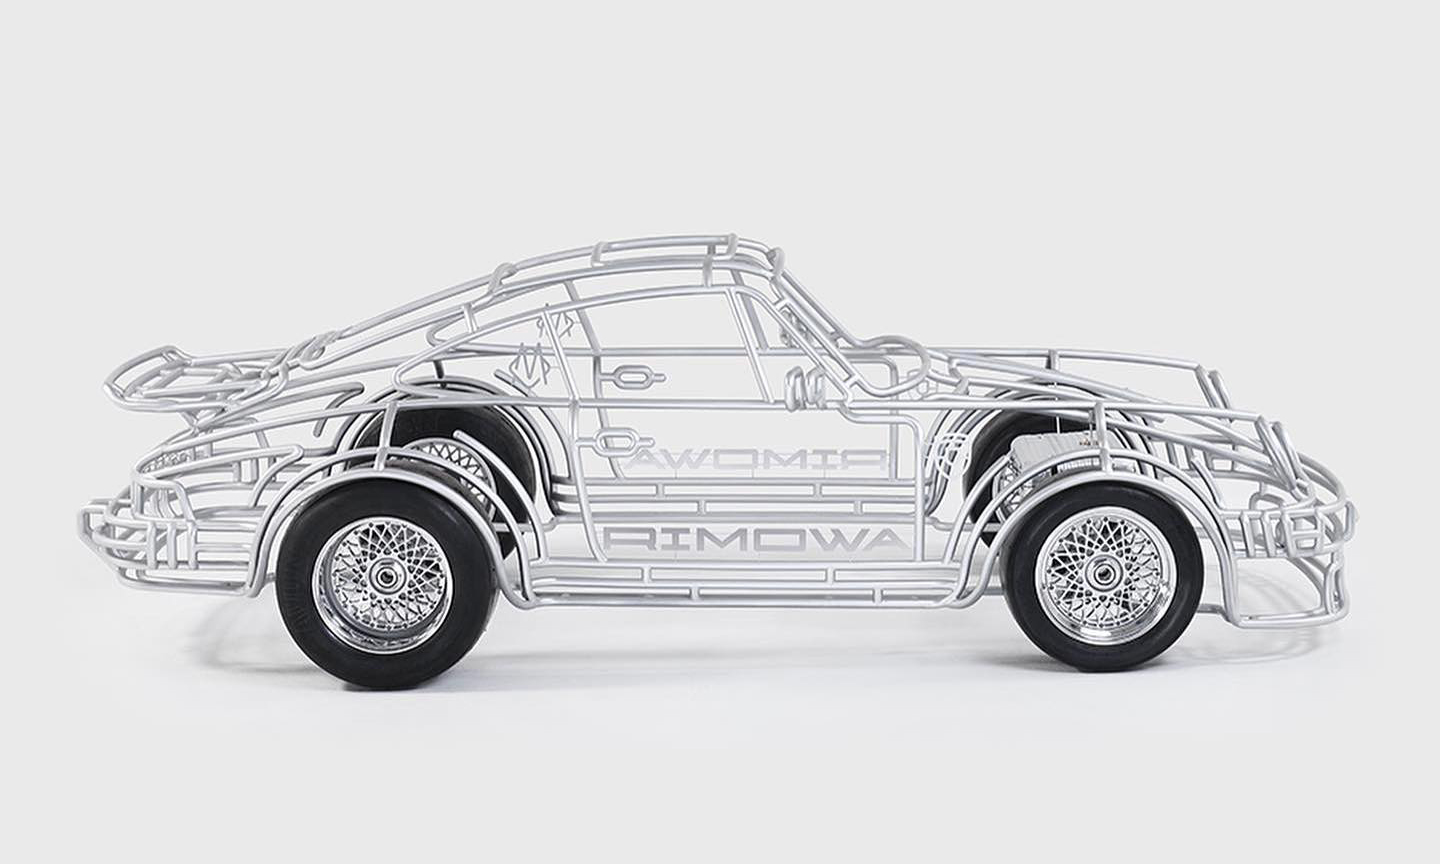 庆祝 Porsche x RIMOWA 合作，艺术家 Benedict Radcliffe 打造保时捷 934 车款